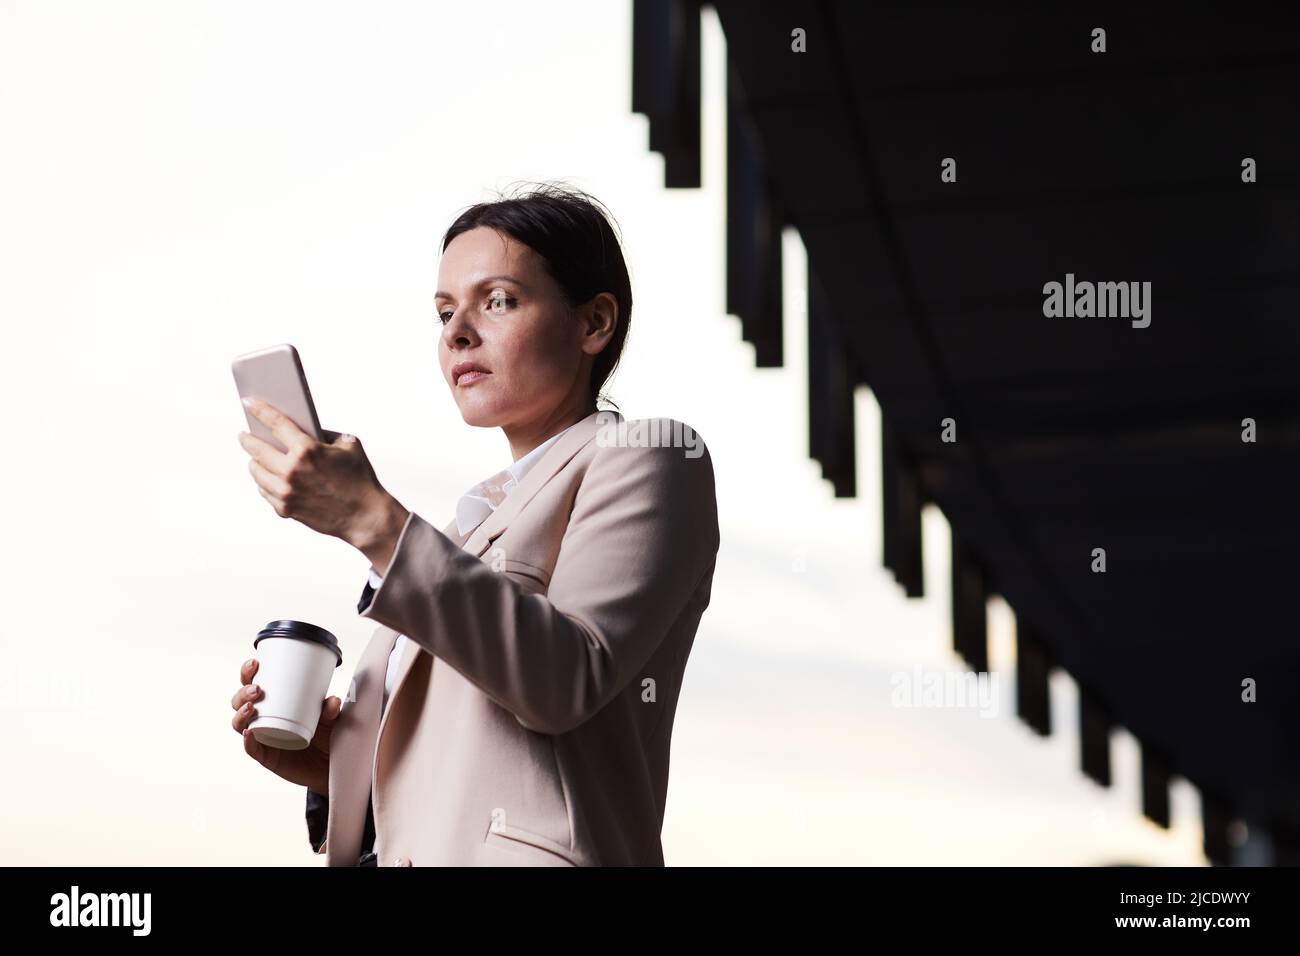 Seriöse Geschäftsfrau mittleren Alters in stilvoller Jacke, die im Freien steht und das Telefon nutzt, während sie das Internet-Signal empfängt Stockfoto